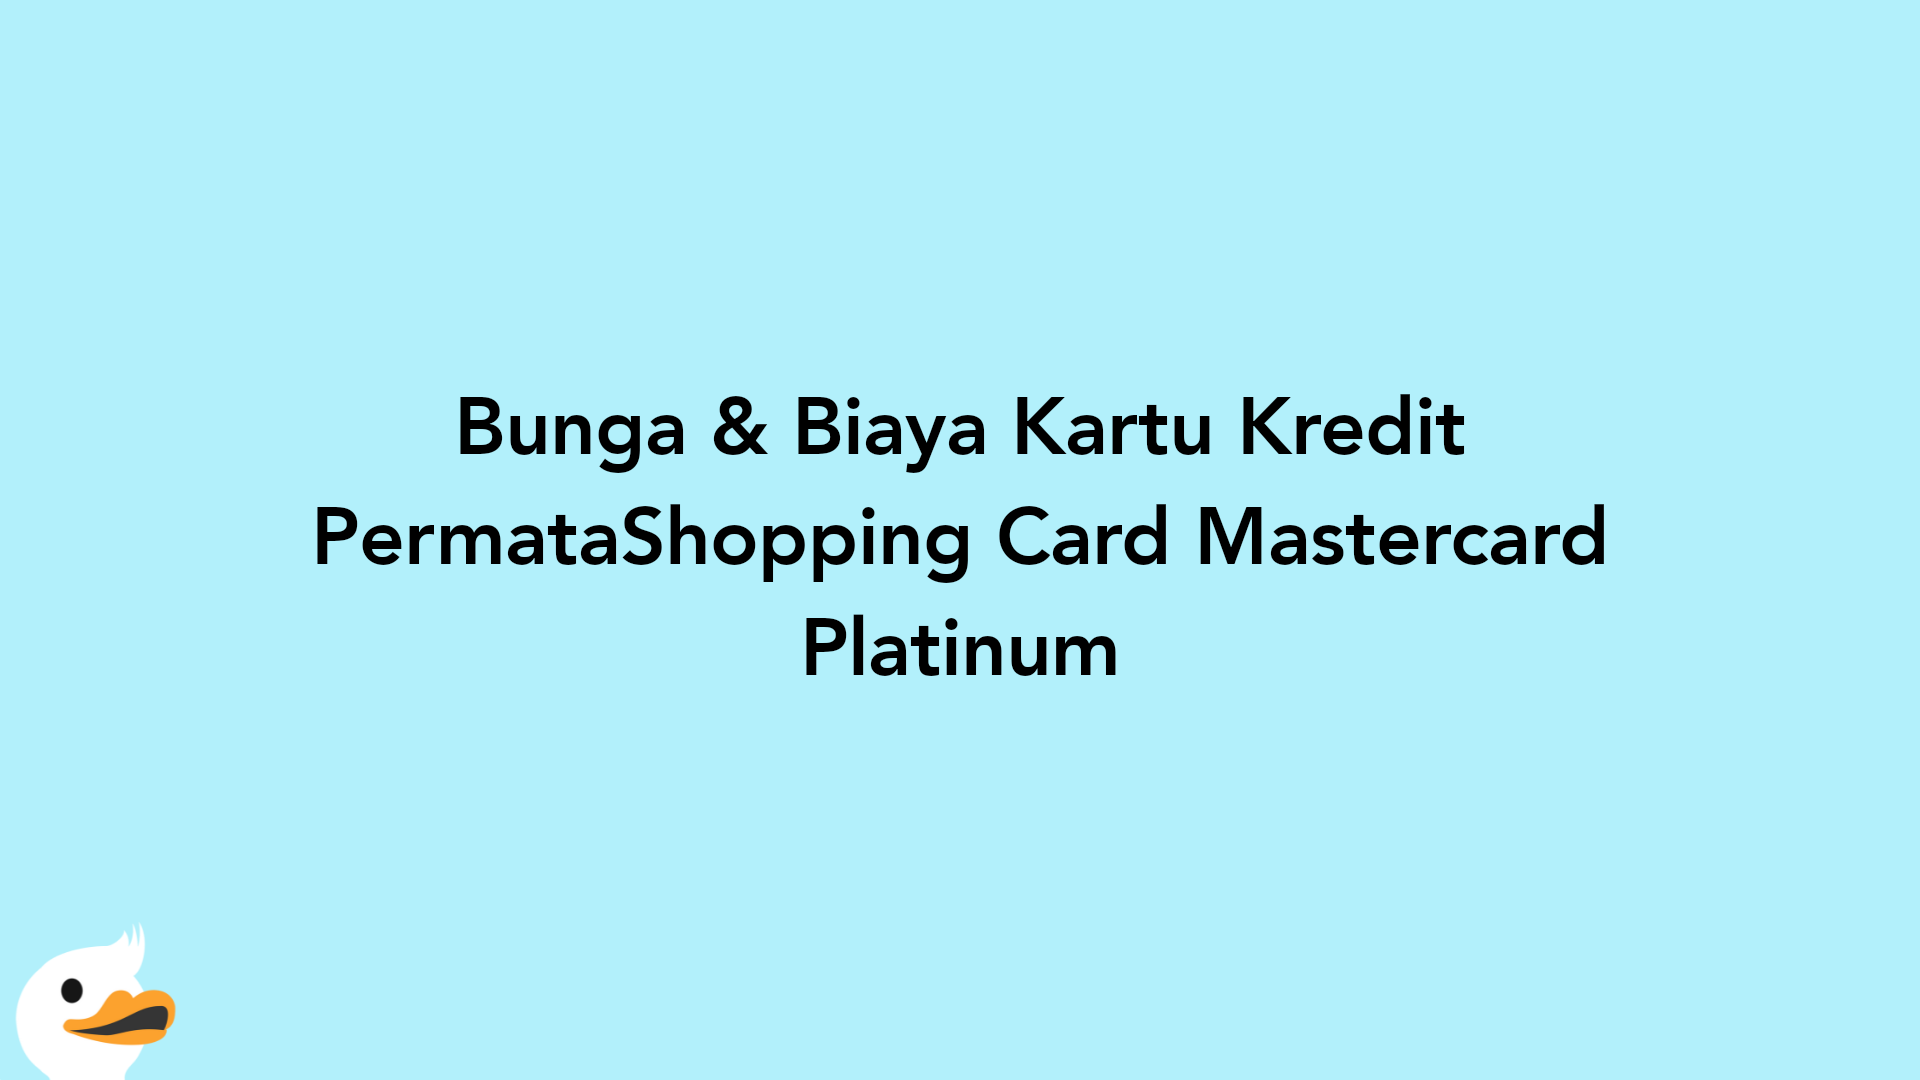 Bunga & Biaya Kartu Kredit PermataShopping Card Mastercard Platinum